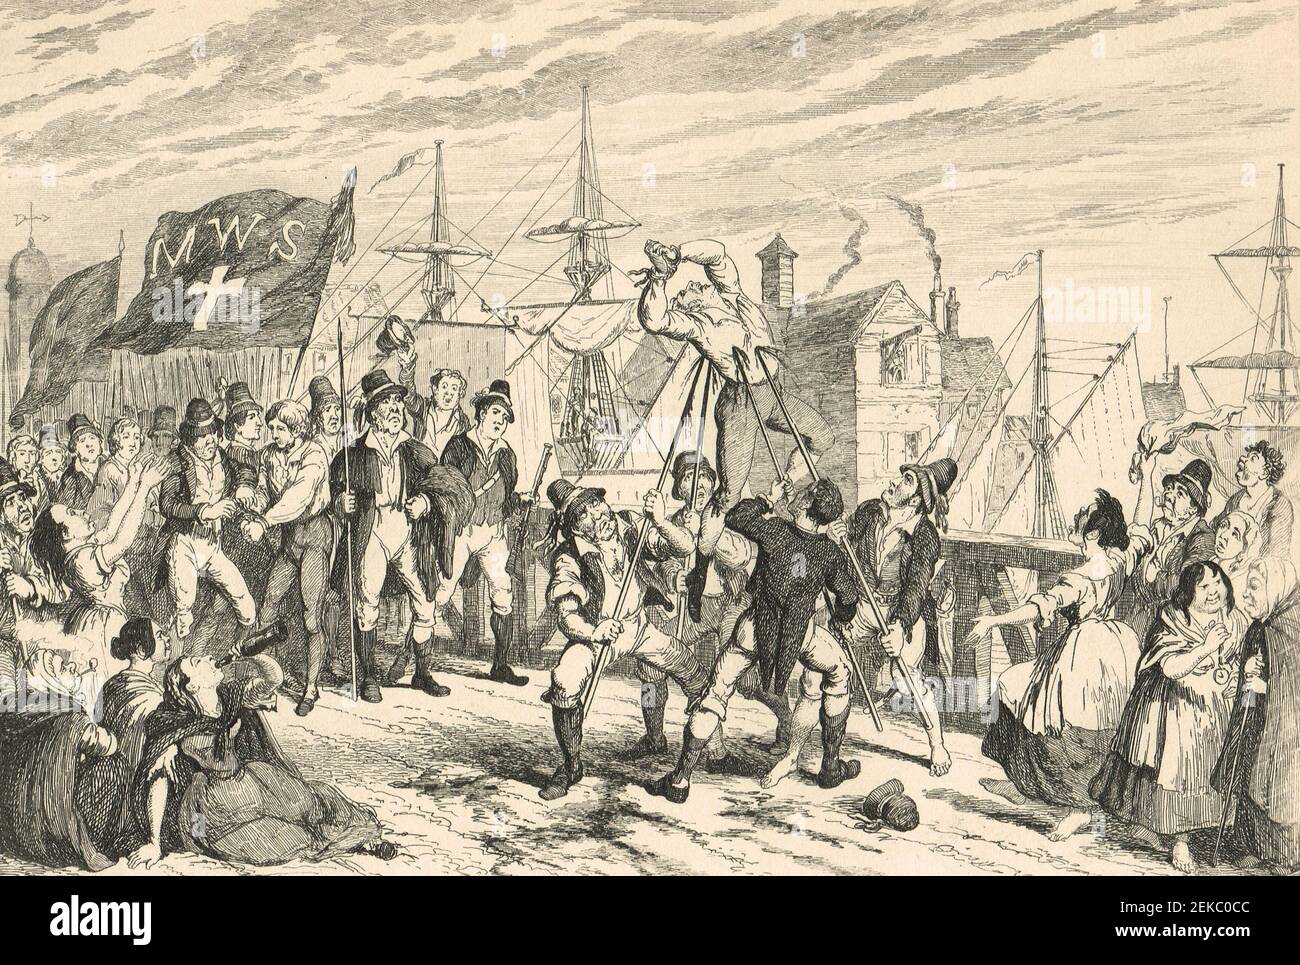 Esecuzioni a Wexford Bridge, 20 giugno 1798. Thomas Dixon e i suoi seguaci massacrarono i prigionieri per lo più lealisti sul ponte della città di Wexford, durante la ribellione irlandese del 1798. L'atto fu condannato dai comandanti ribelli che furono a loro volta giustiziati sul ponte dagli inglesi dopo aver riconquistato Wexford. Foto Stock